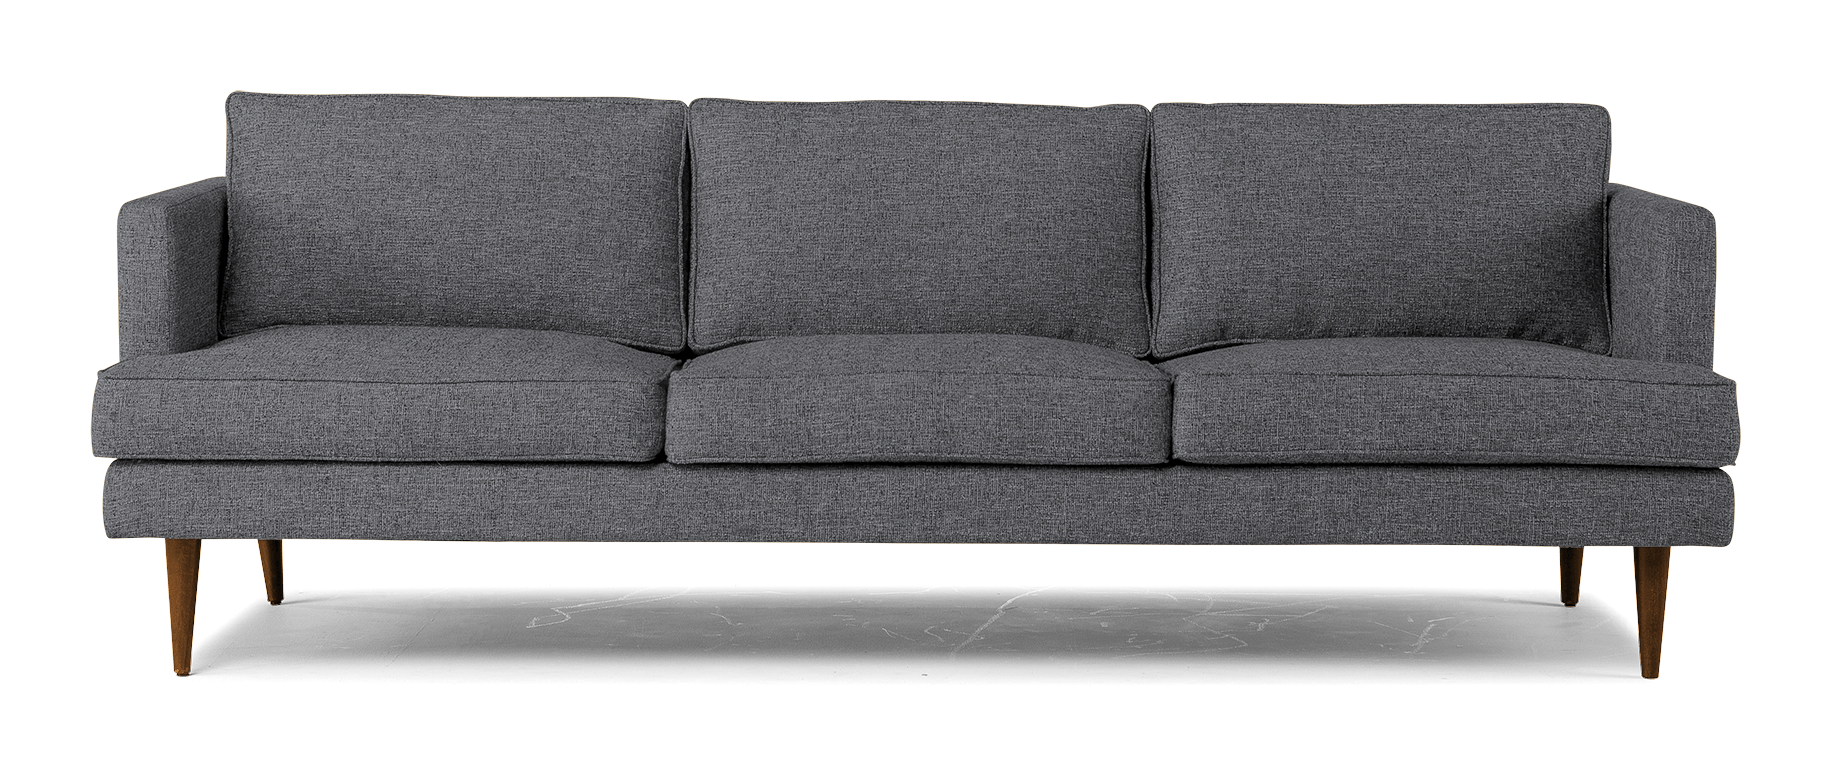 preston grand sofa essence ash